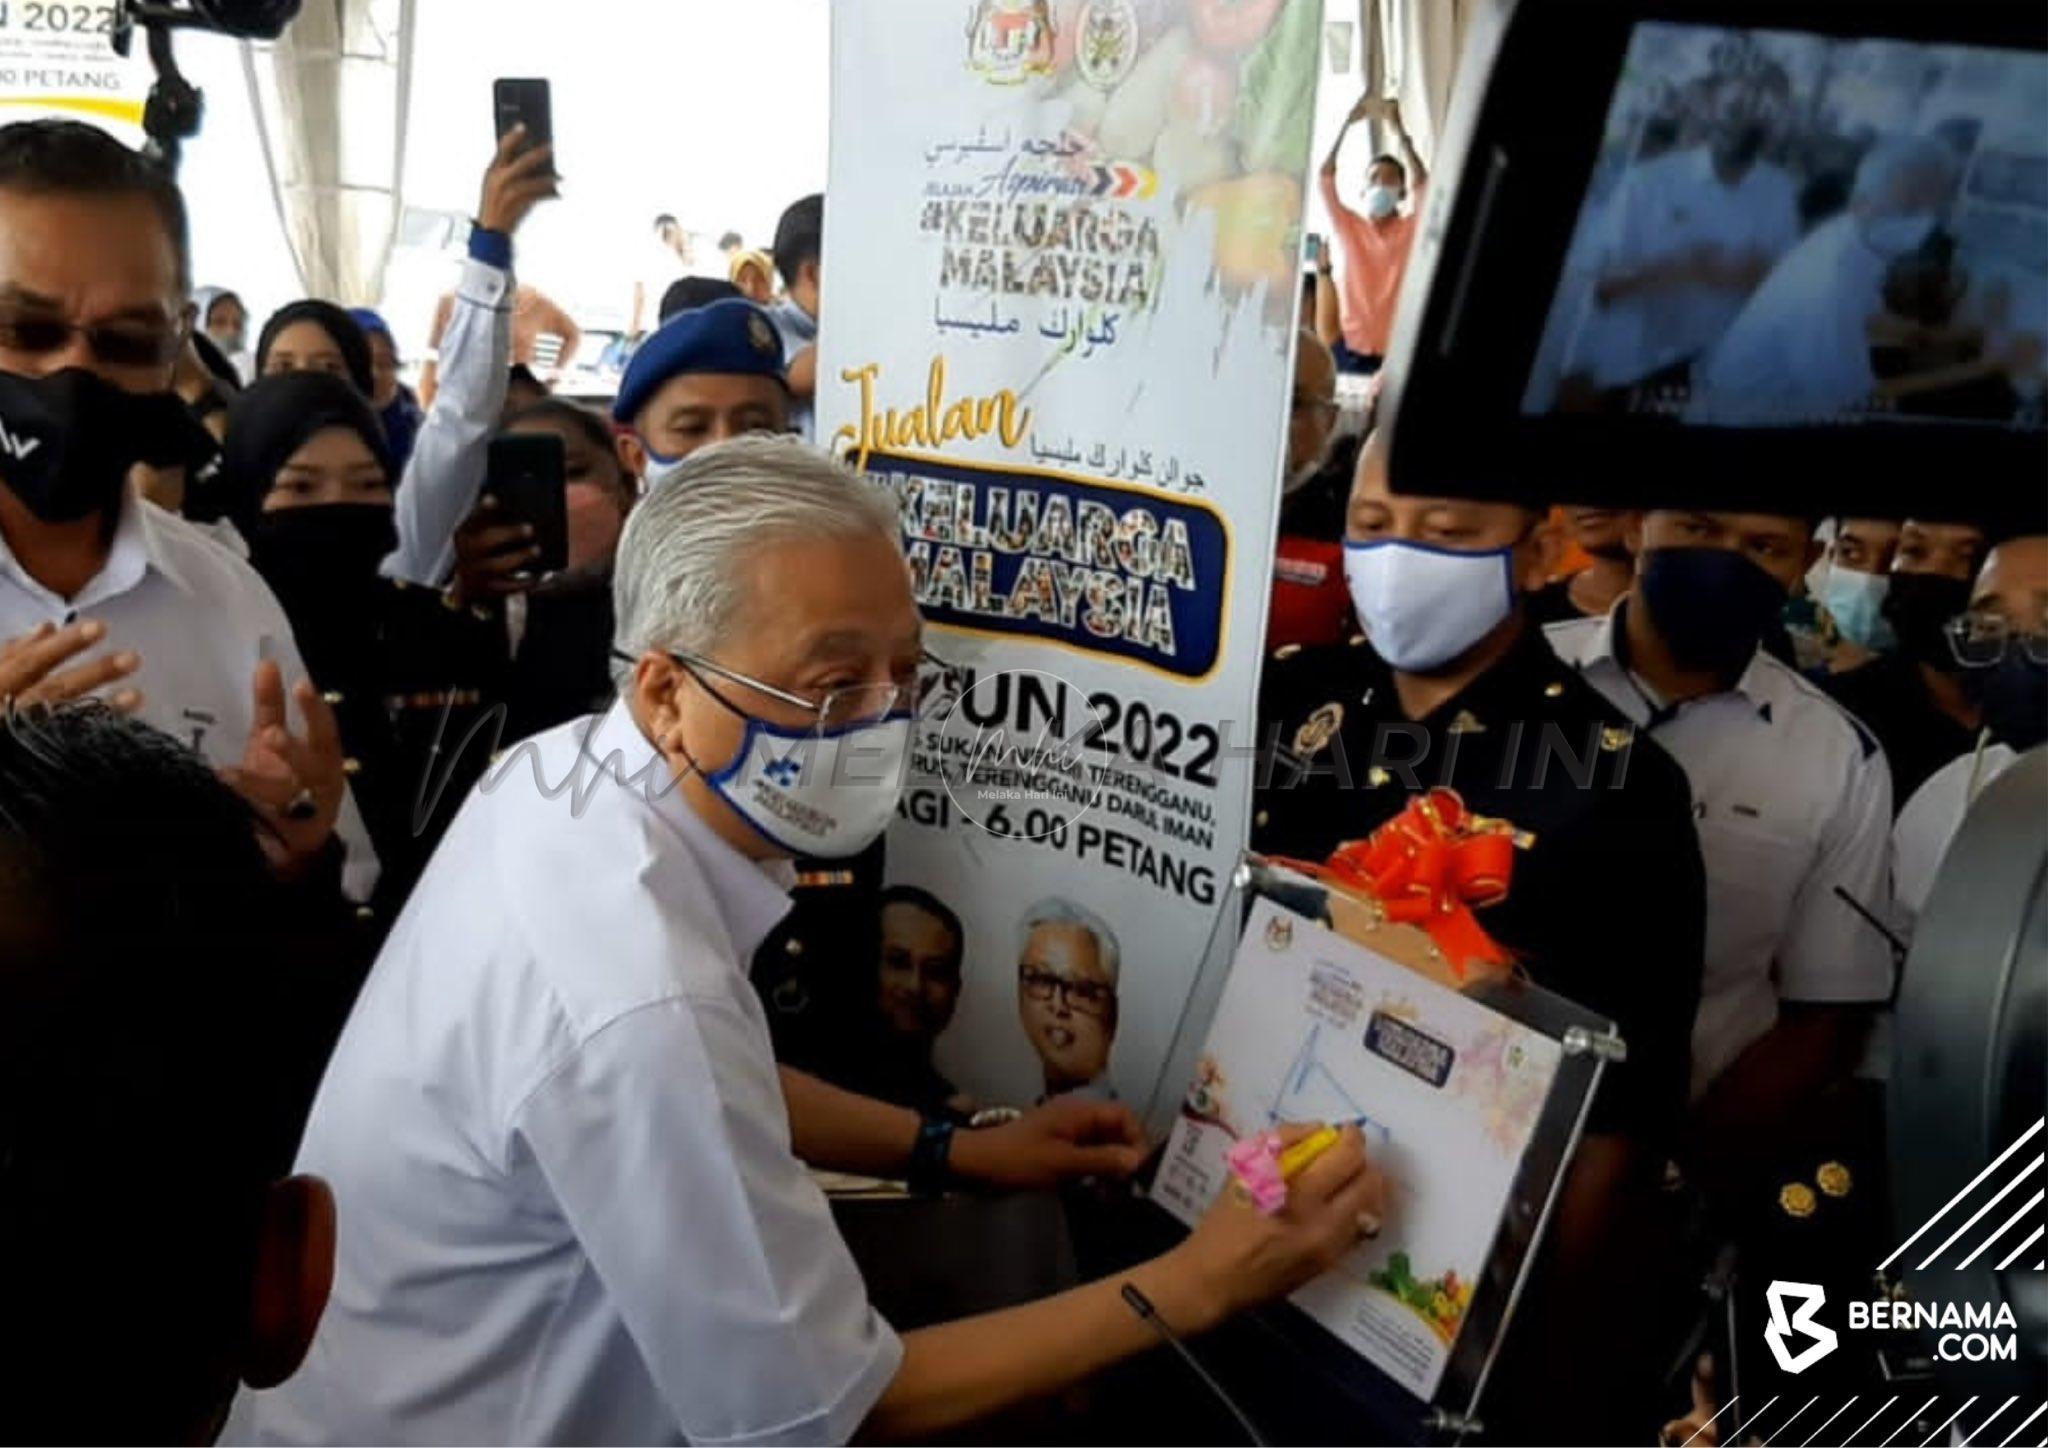 Terengganu lalui proses transformasi pembangunan pesat – PM